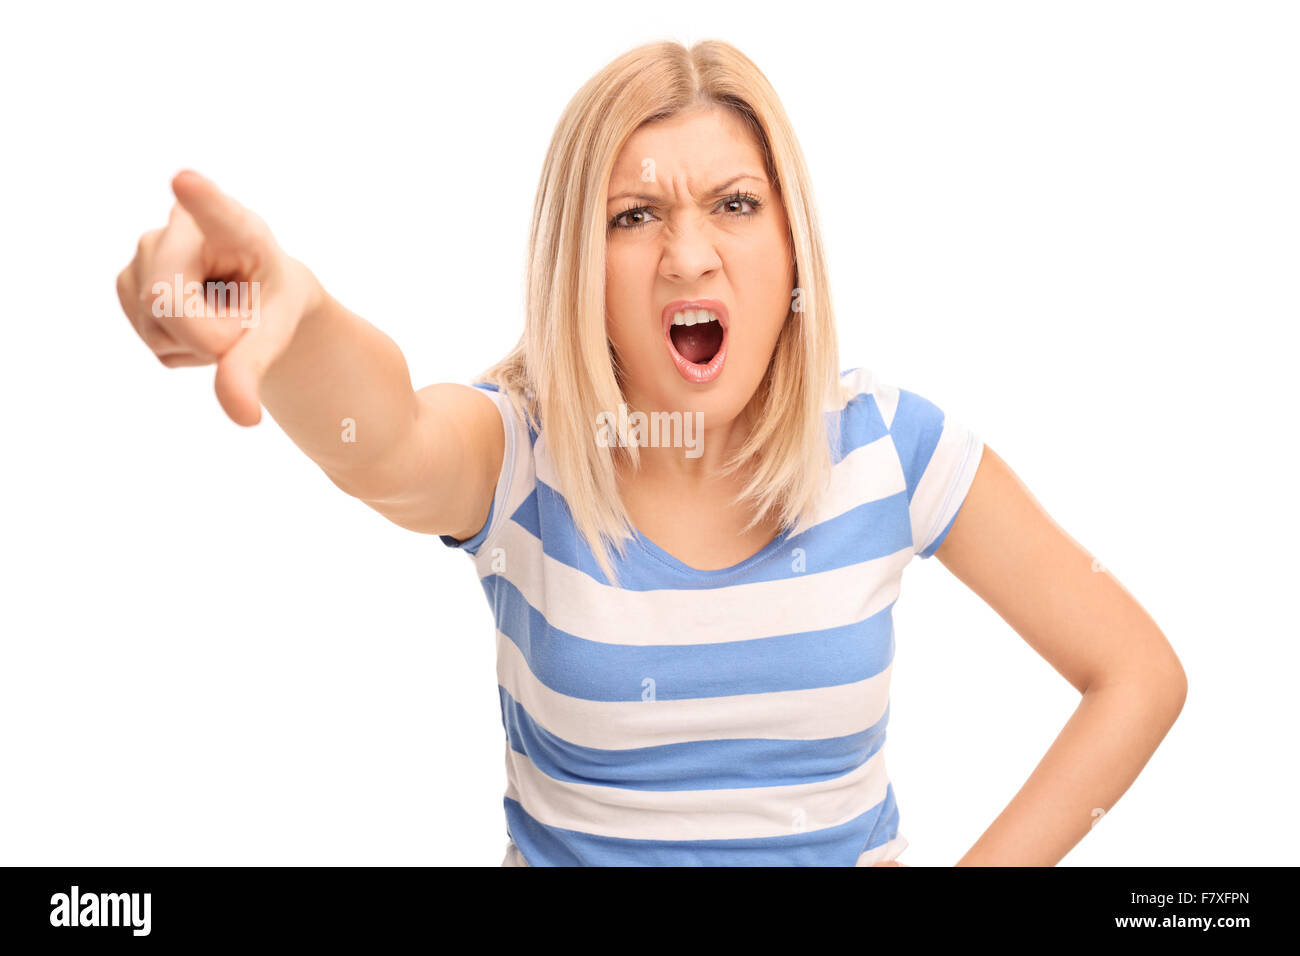 Böse blonde Frau jemanden schimpfen und zeigt mit dem Finger in Richtung der Kamera isoliert auf weißem Hintergrund Stockfoto